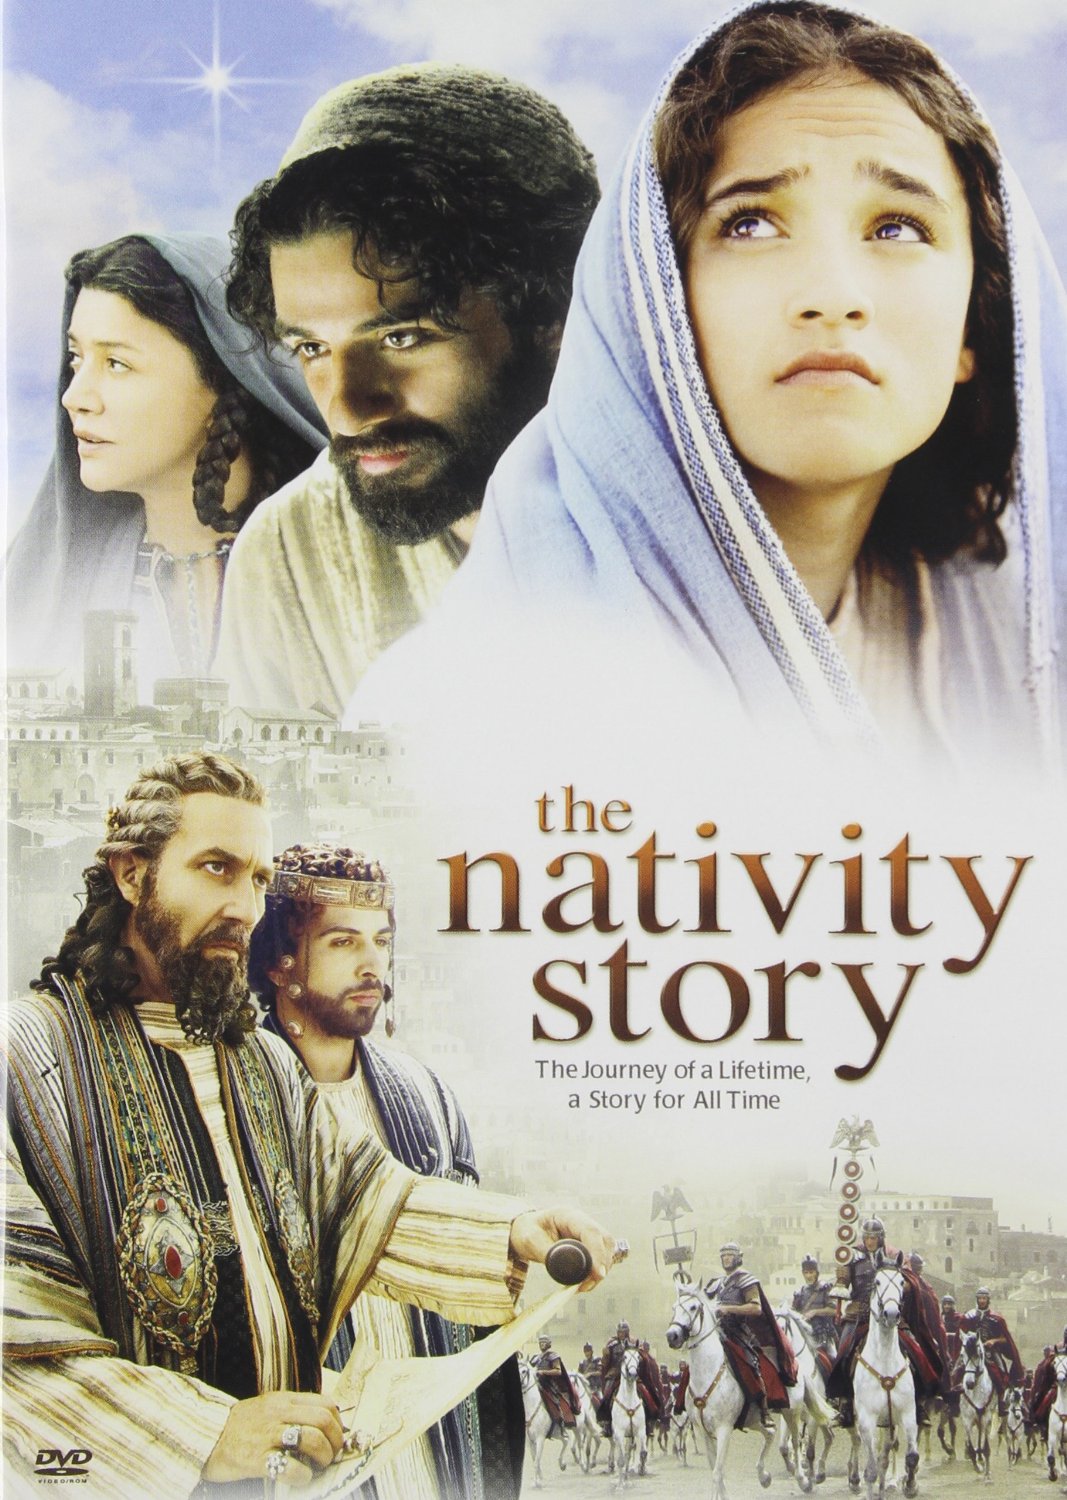 the nativity story on dvd